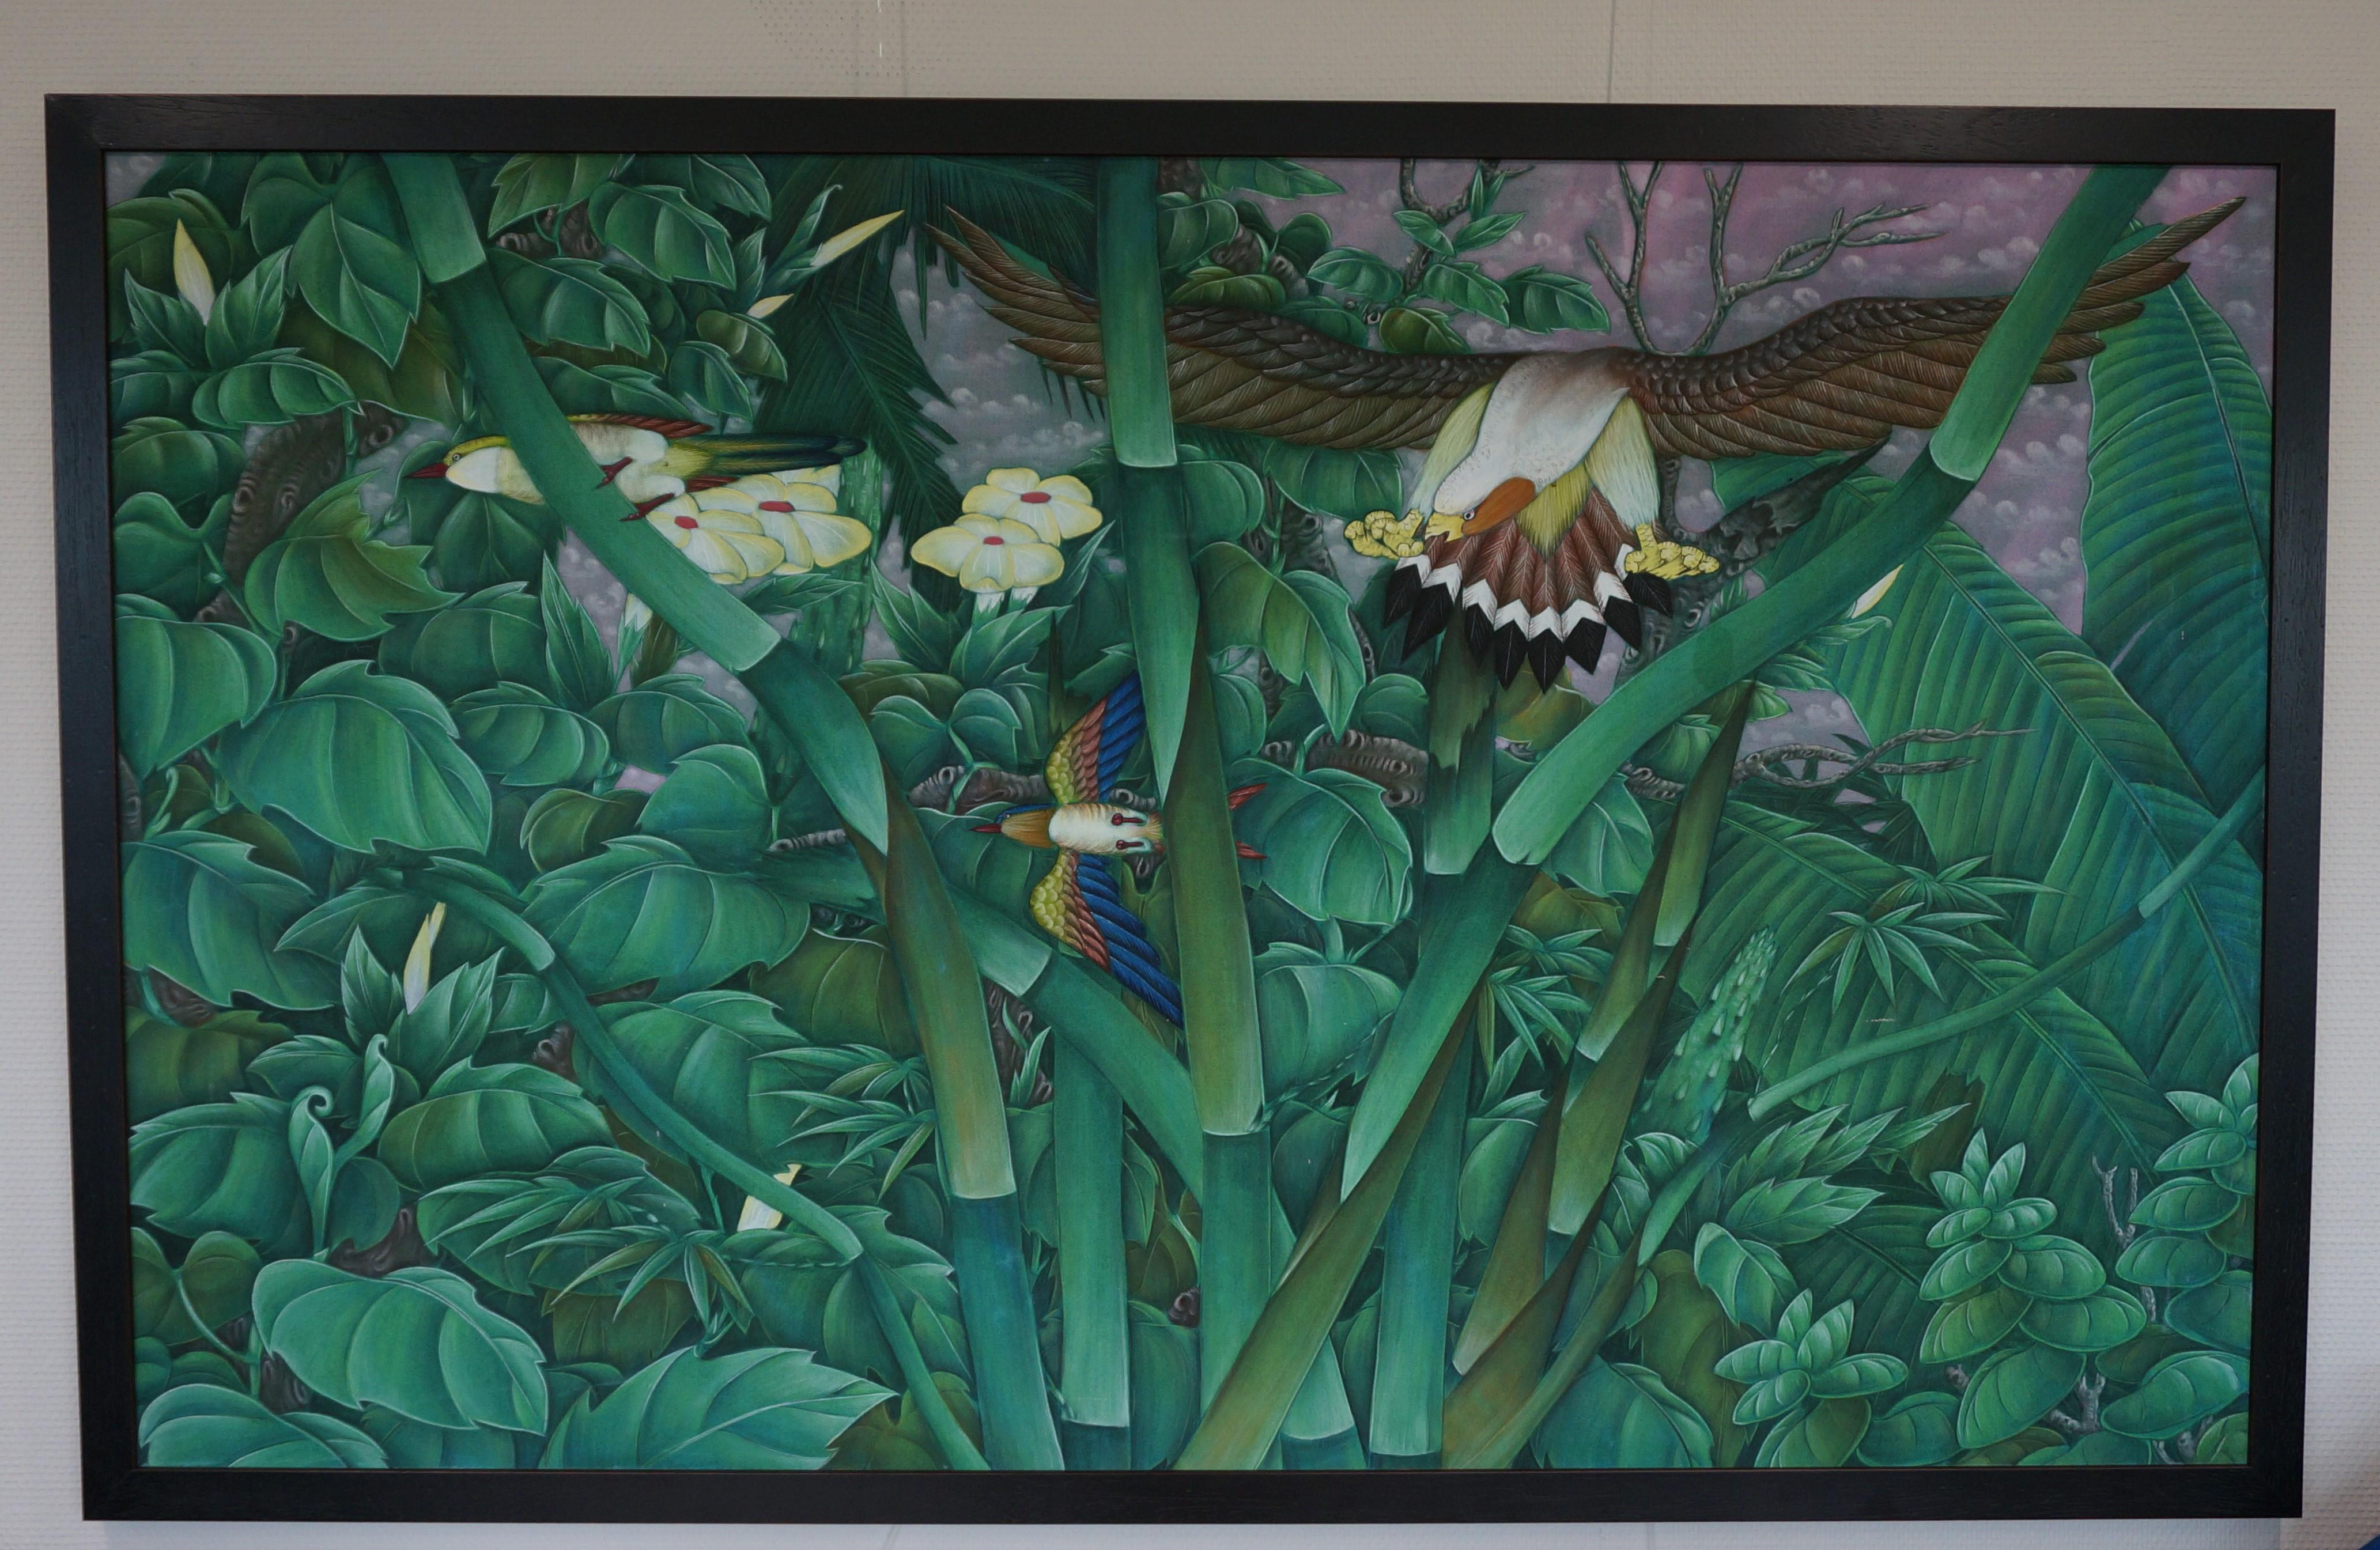 Künstler unbekannt
Großes balinesisches Gemälde auf Leinwand, das einen tropischen Wald mit Vögeln darstellt.
Indonesien, zweite Hälfte des 20. Jahrhunderts

In modernem Rahmen

Abmessungen: 83 x 135 cm. (ohne Rahmen)

Insgesamt in gutem Zustand,